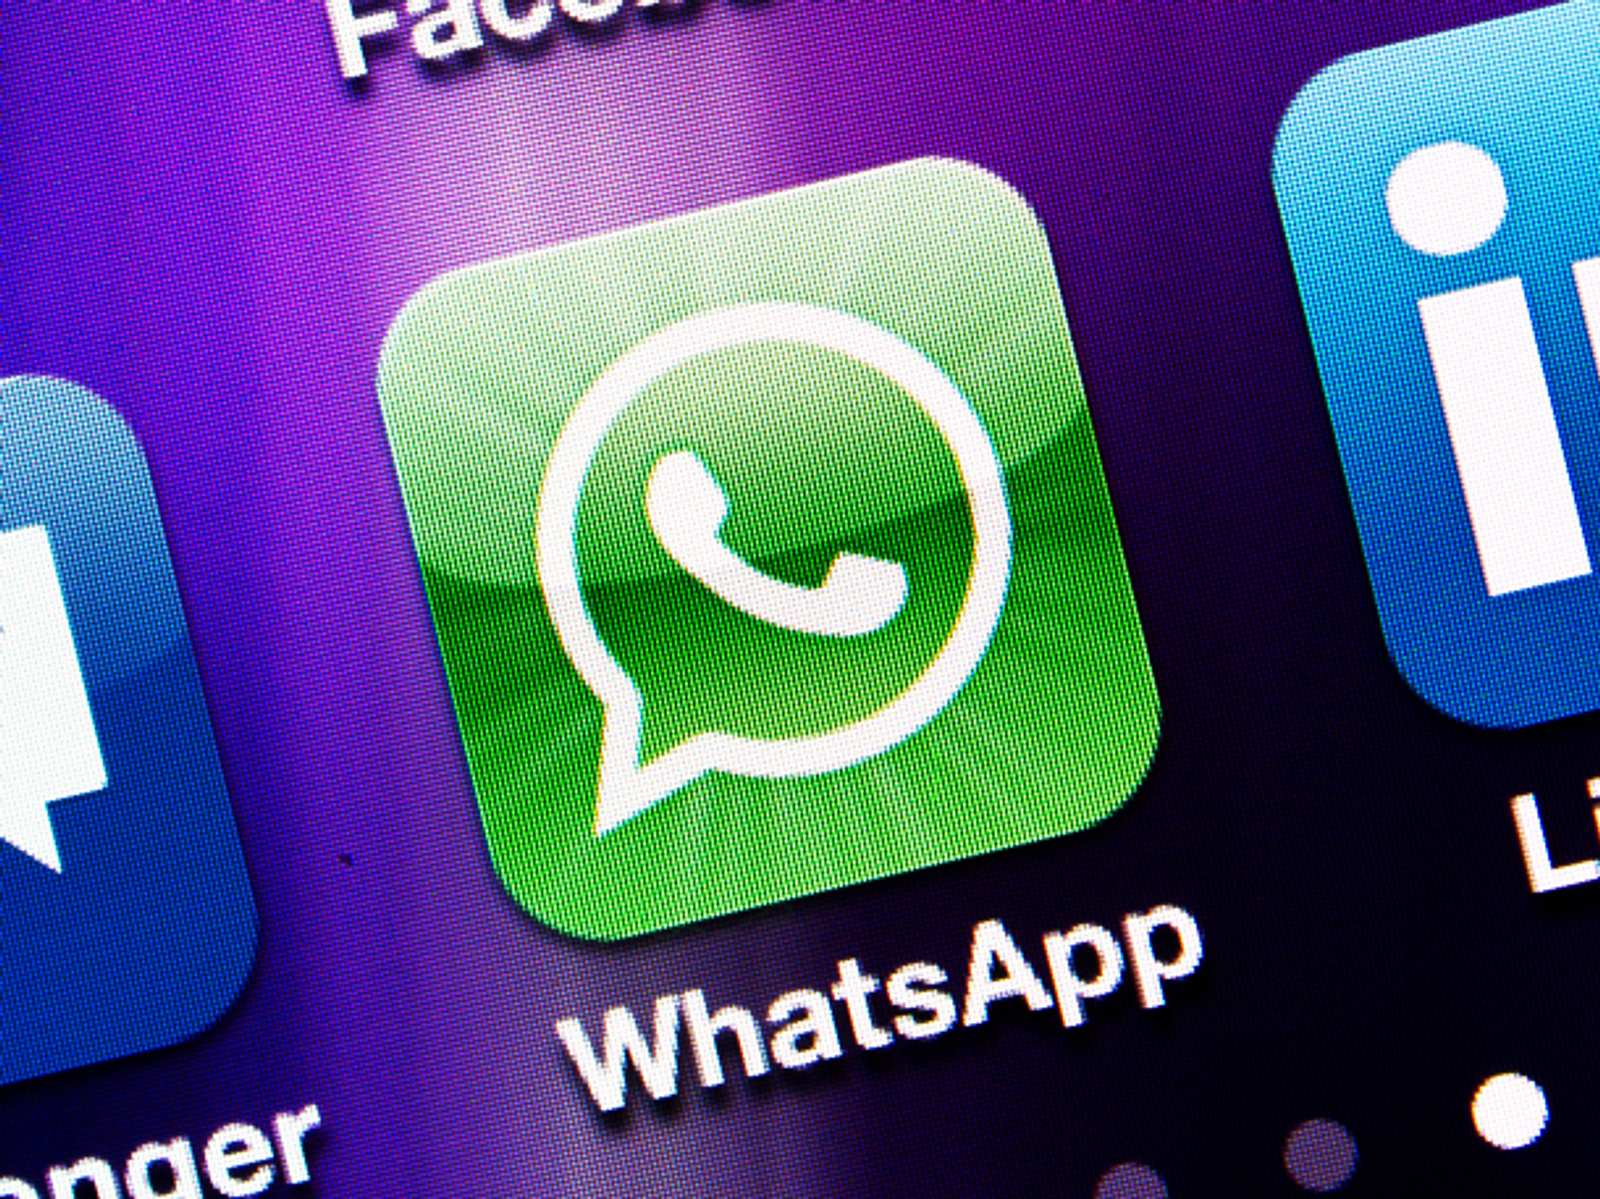 Whatsapp zuletzt online uhrzeit manipulieren